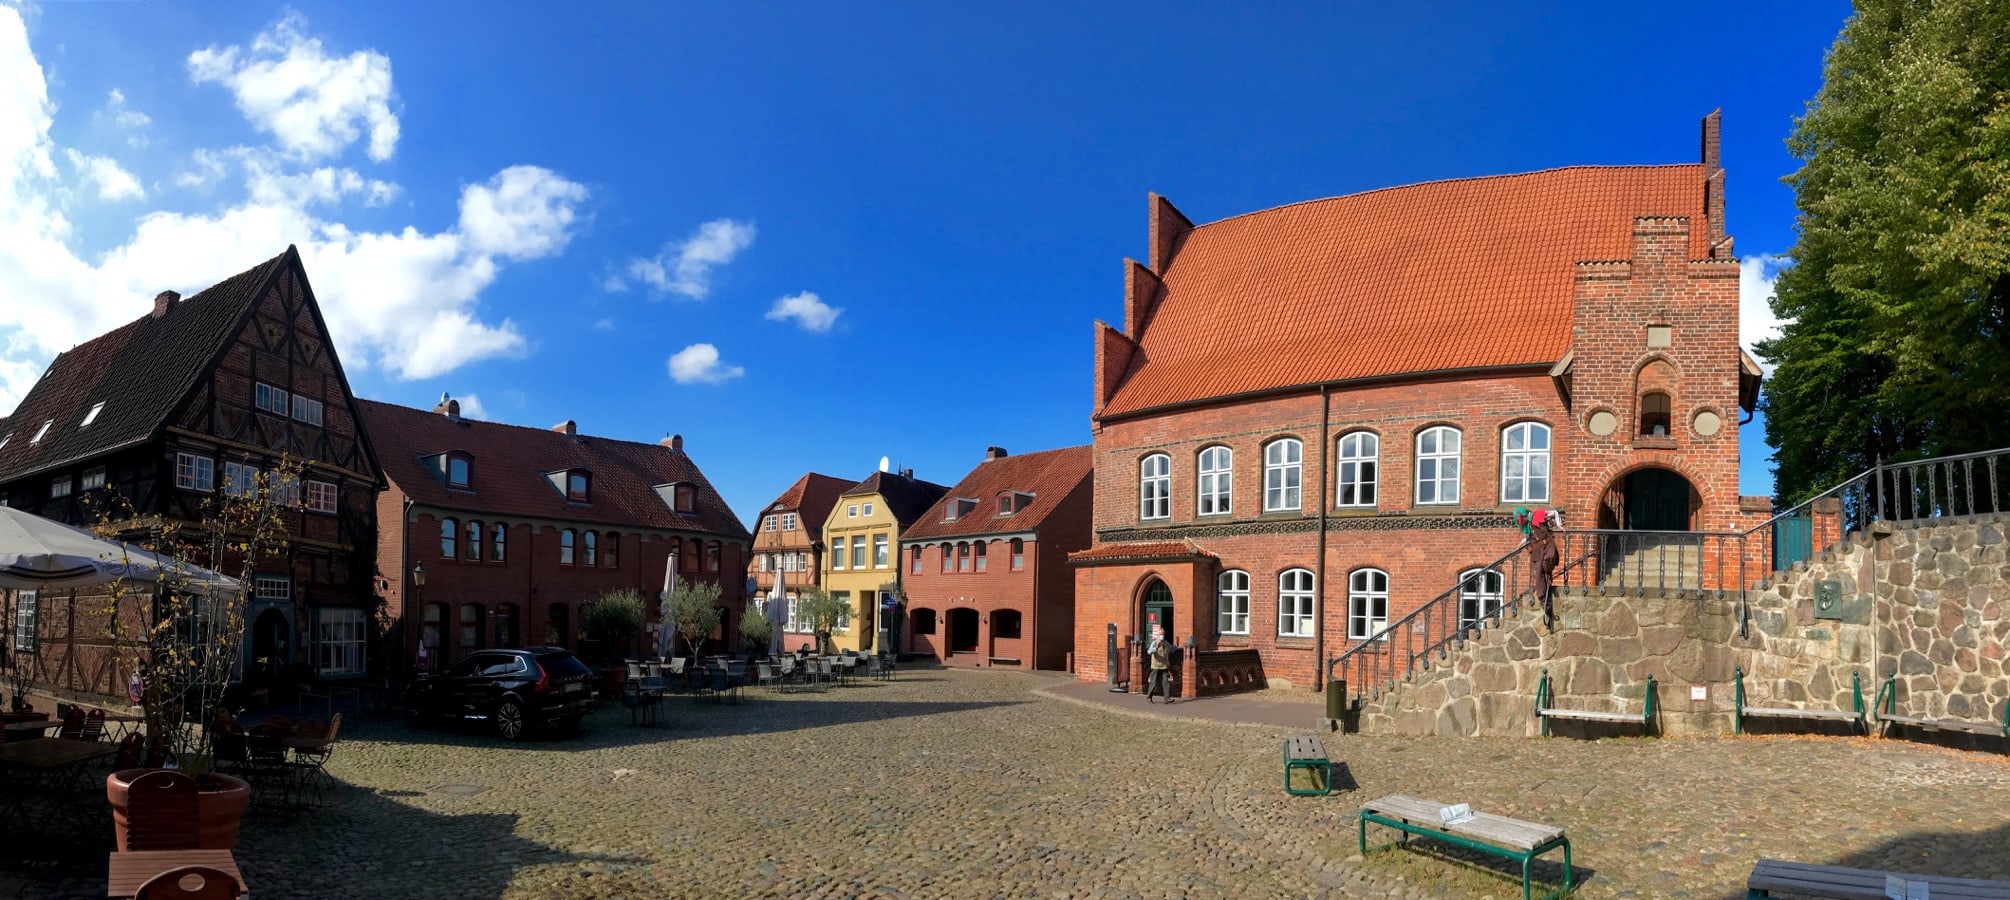 Historischer Marktplatz in Mölln